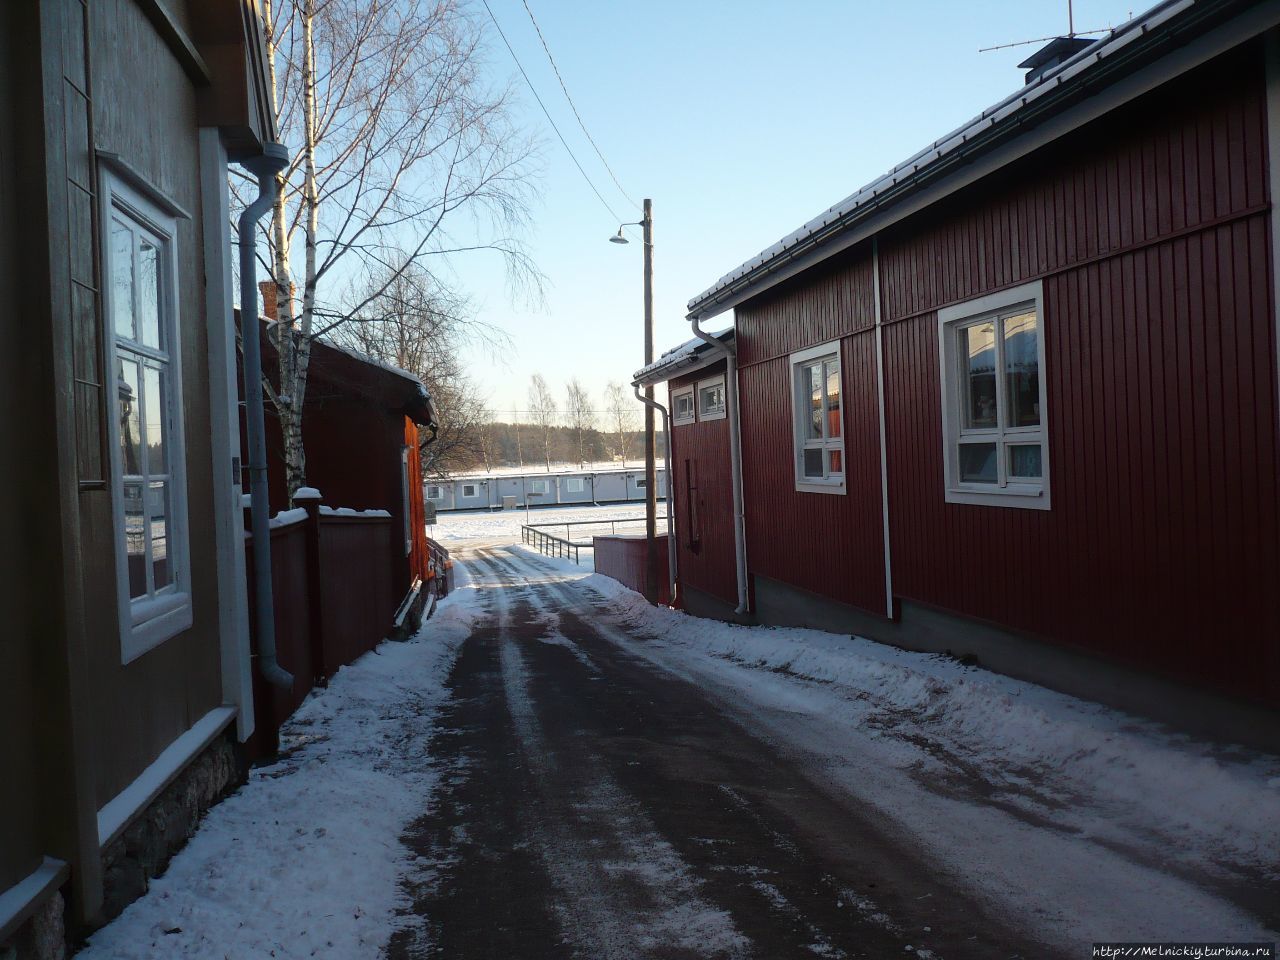 Морозный день в Ловиисе Ловииса, Финляндия